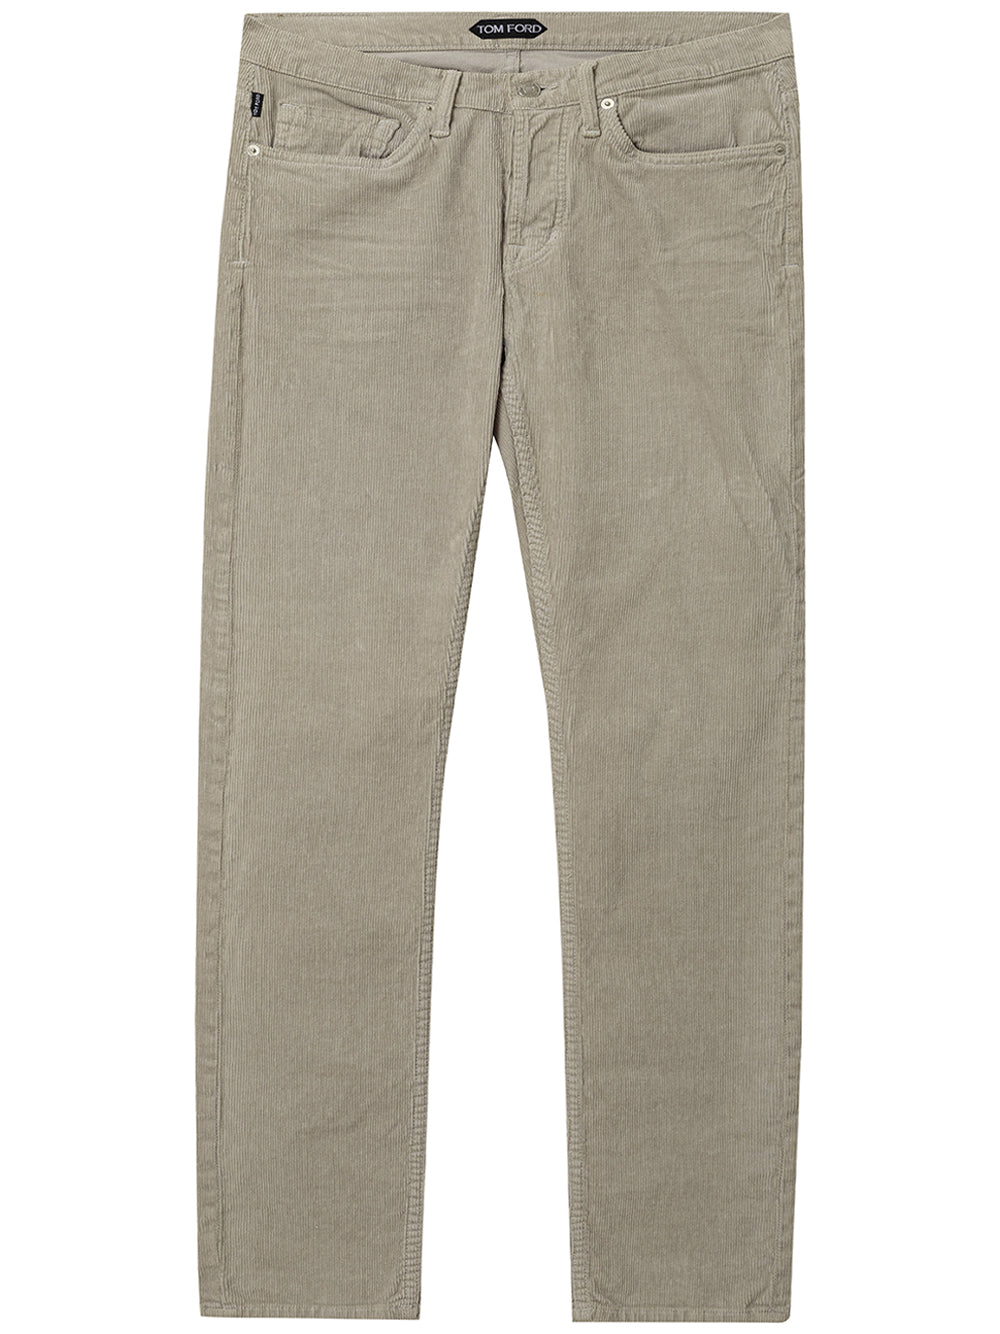 Pantalones de pana Tom Ford